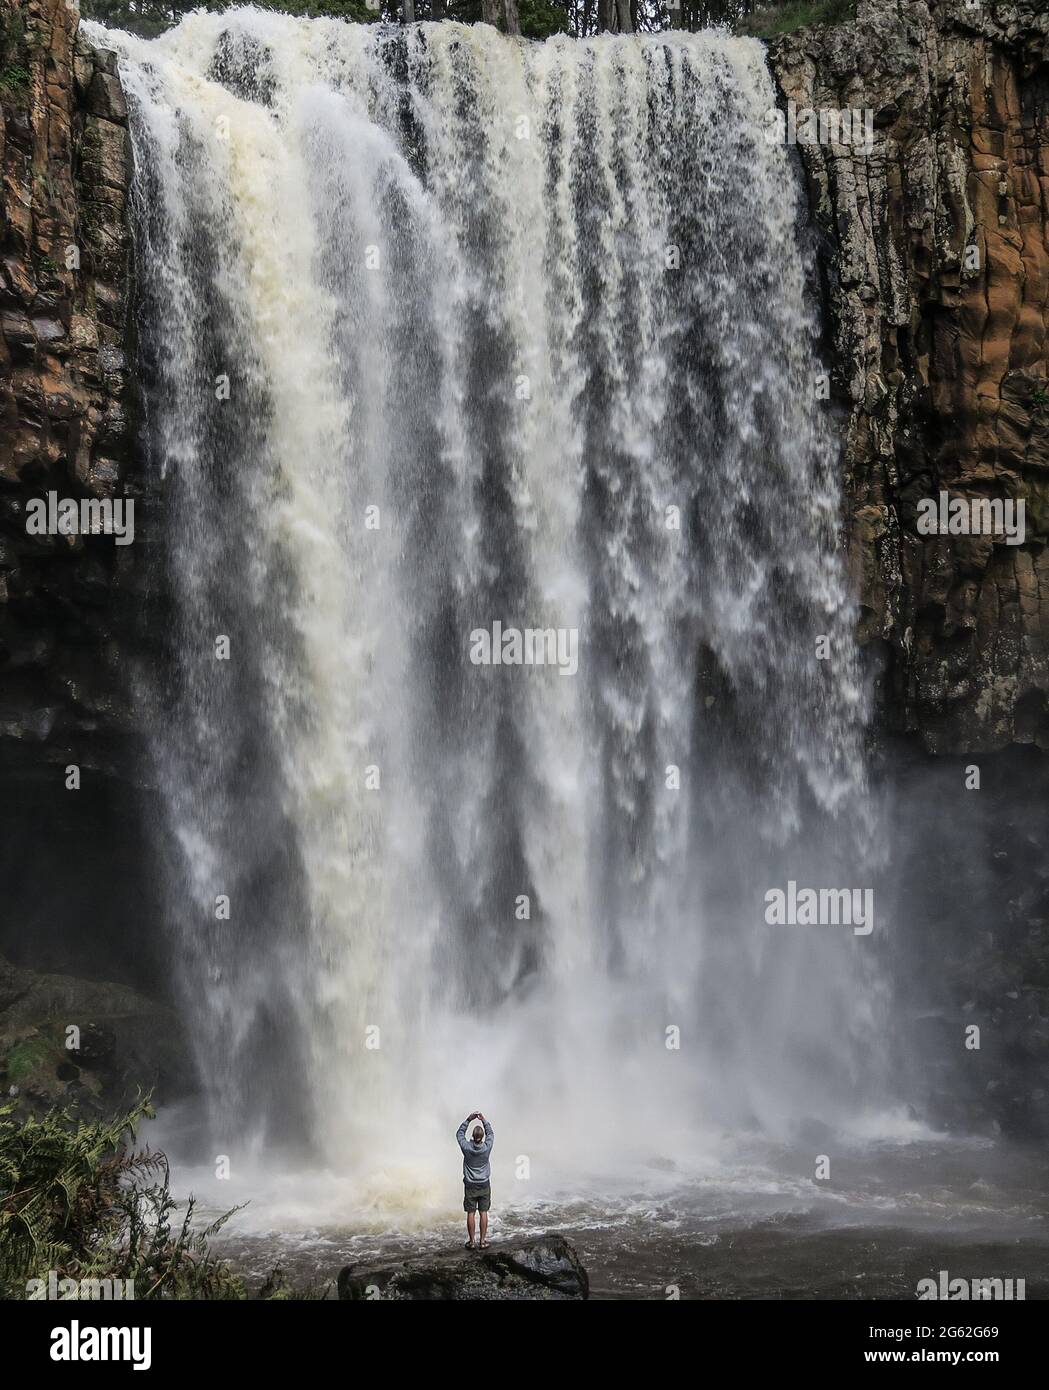 Cascata di Trentham. Le cascate Trentham, appena a nord di Melbourne, Australia, scorrono mentre un turista scatta una foto dal basso. Foto Stock